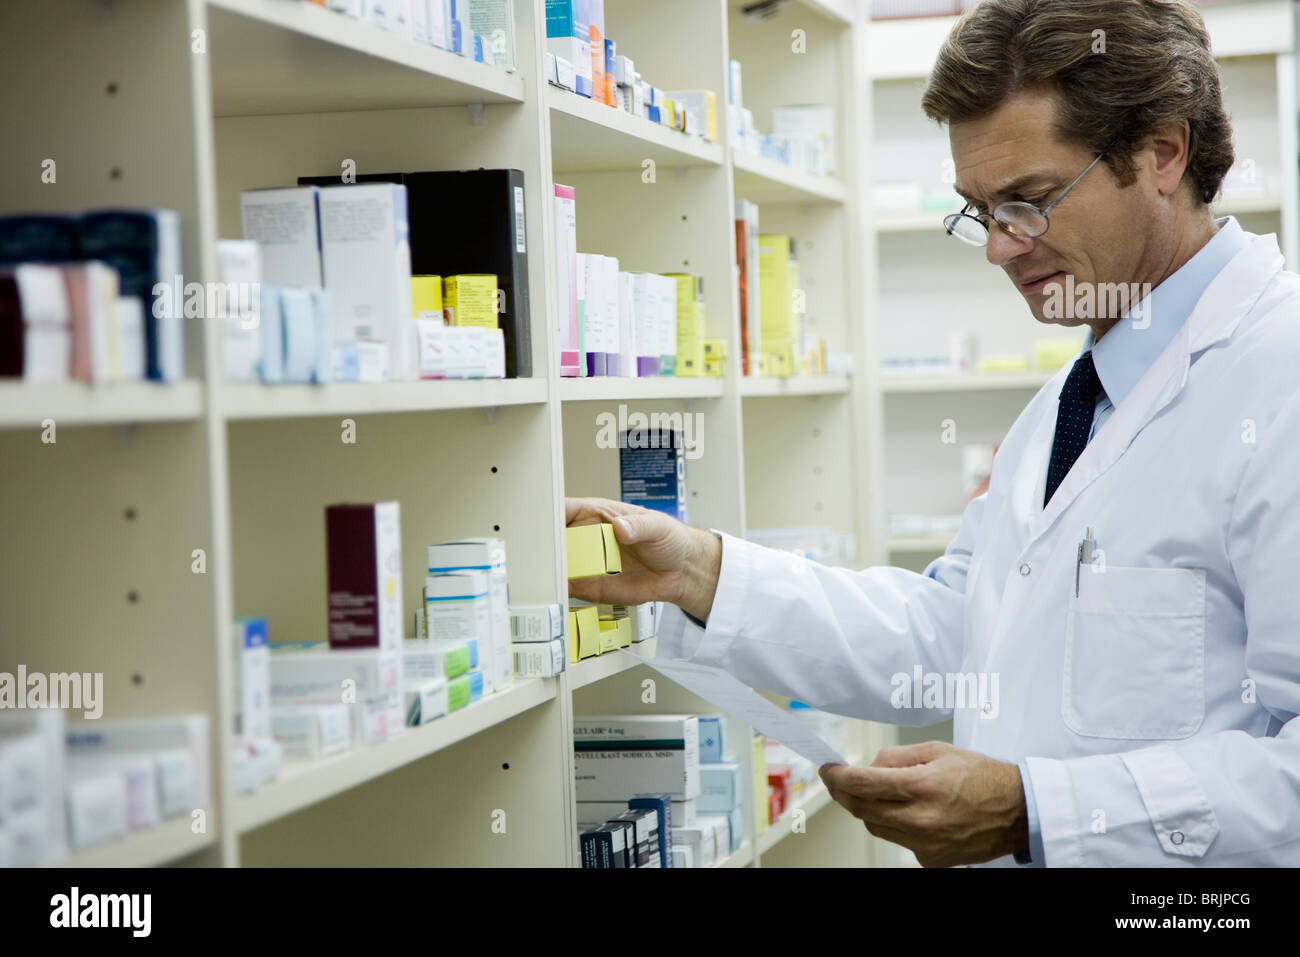 Pharmacist checking shelf for medication Stock Photo